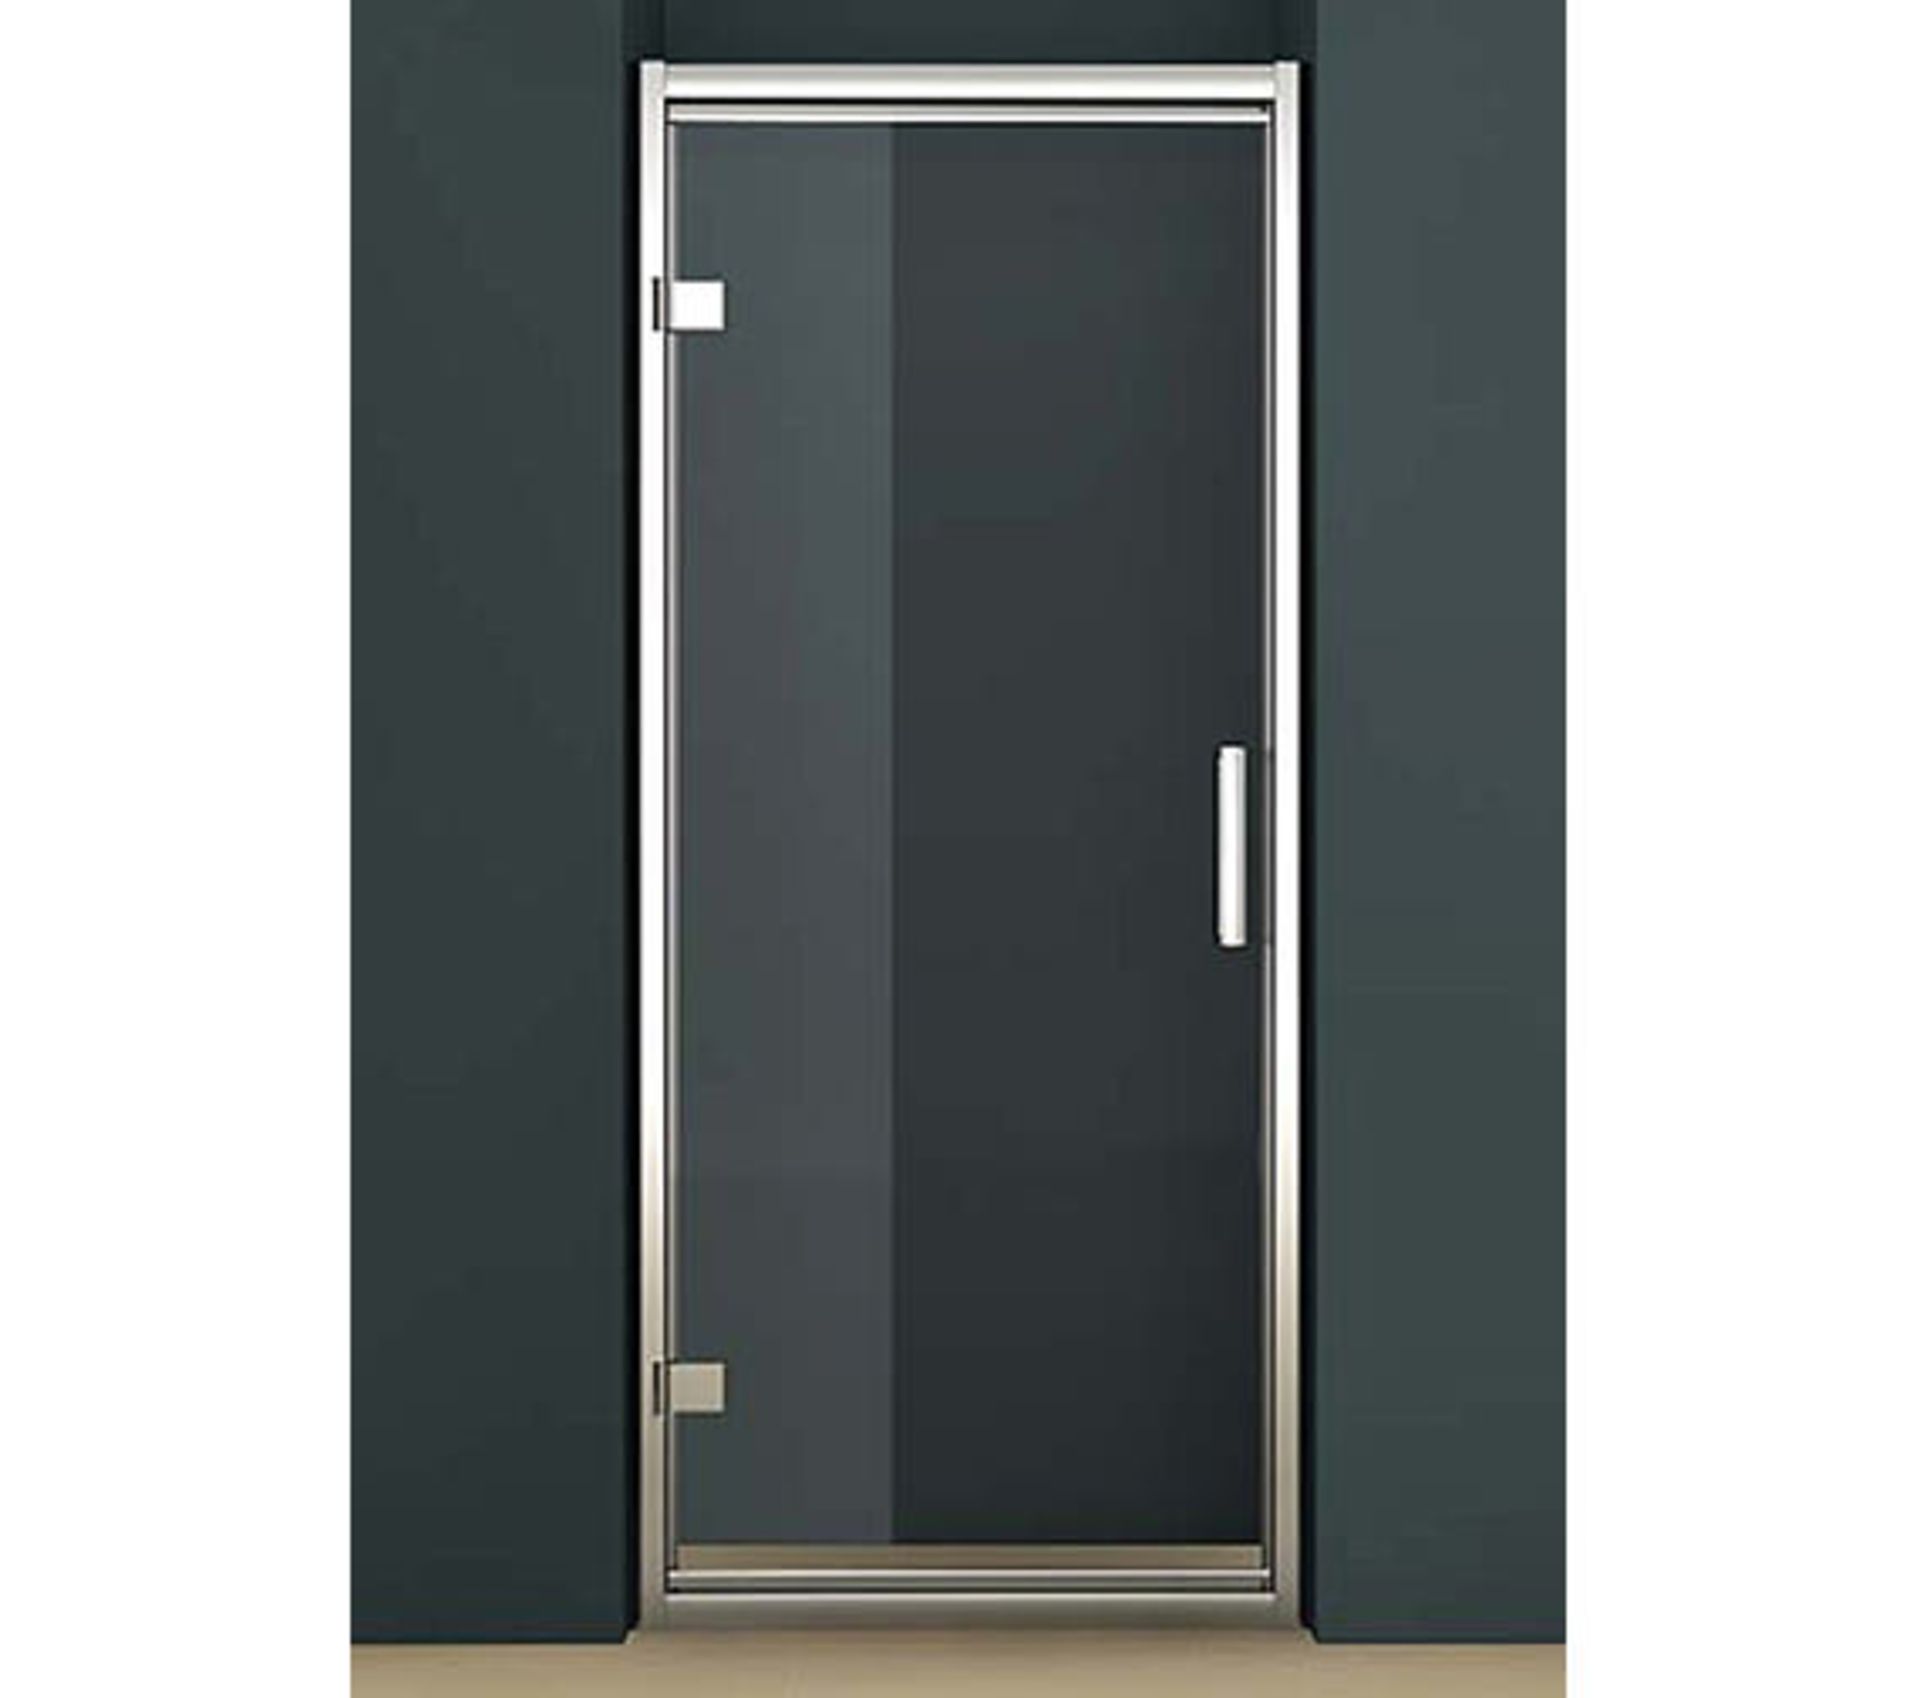 1 x Tavistock Oyxgen8 8mm 760mm Hinged Door Shower Enclosure - Includes SE1H76 Hinged Door and